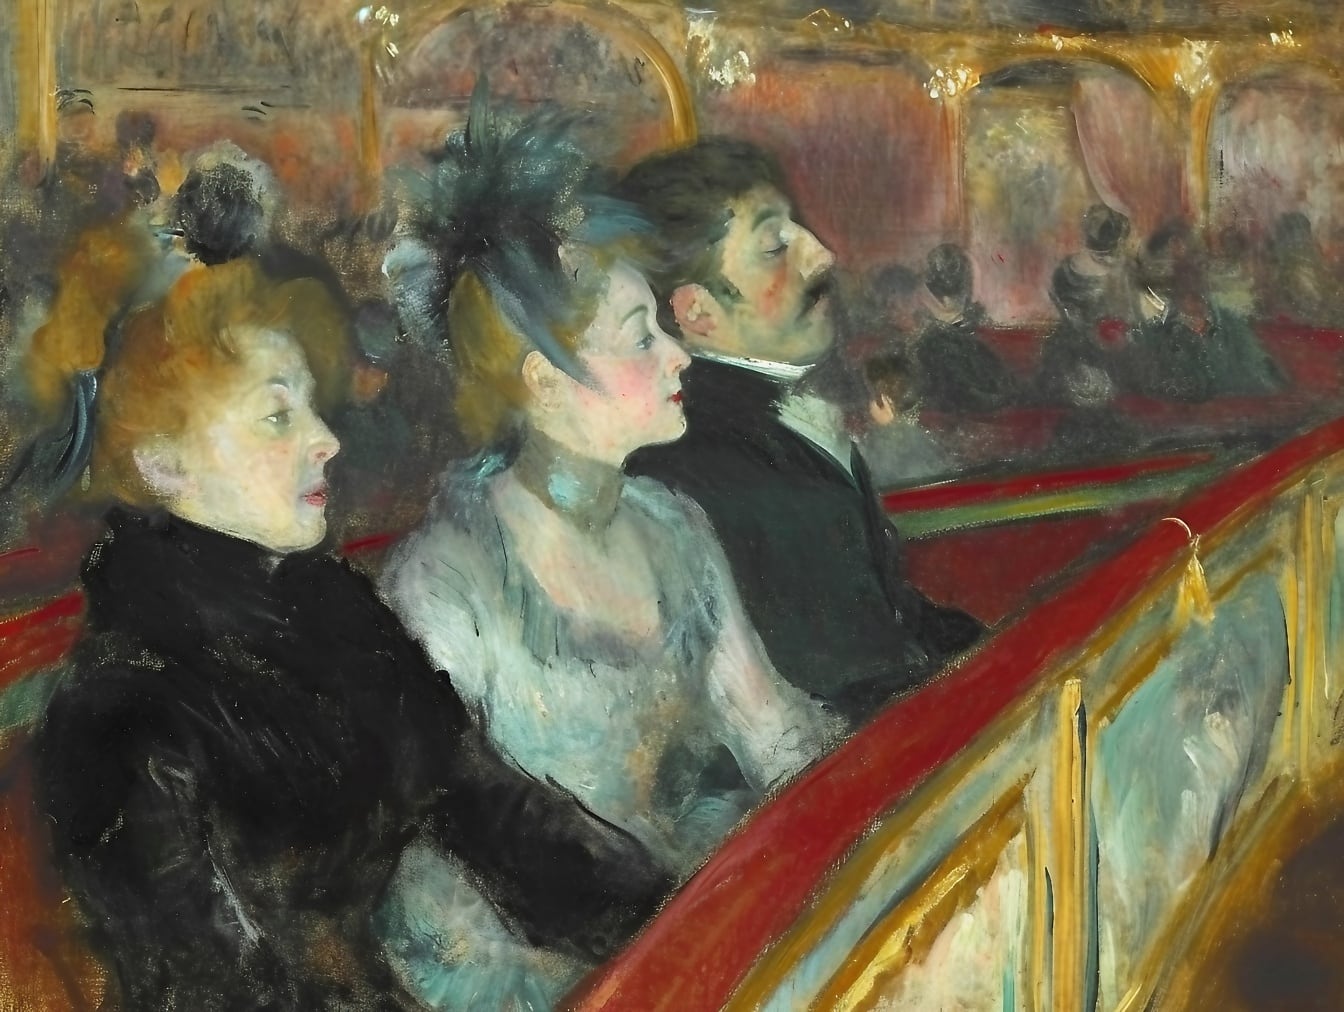 Peinture à l’huile d’un groupe de personnes assises dans une première rangée de théâtre représentant l’atmosphère du 19ème siècle